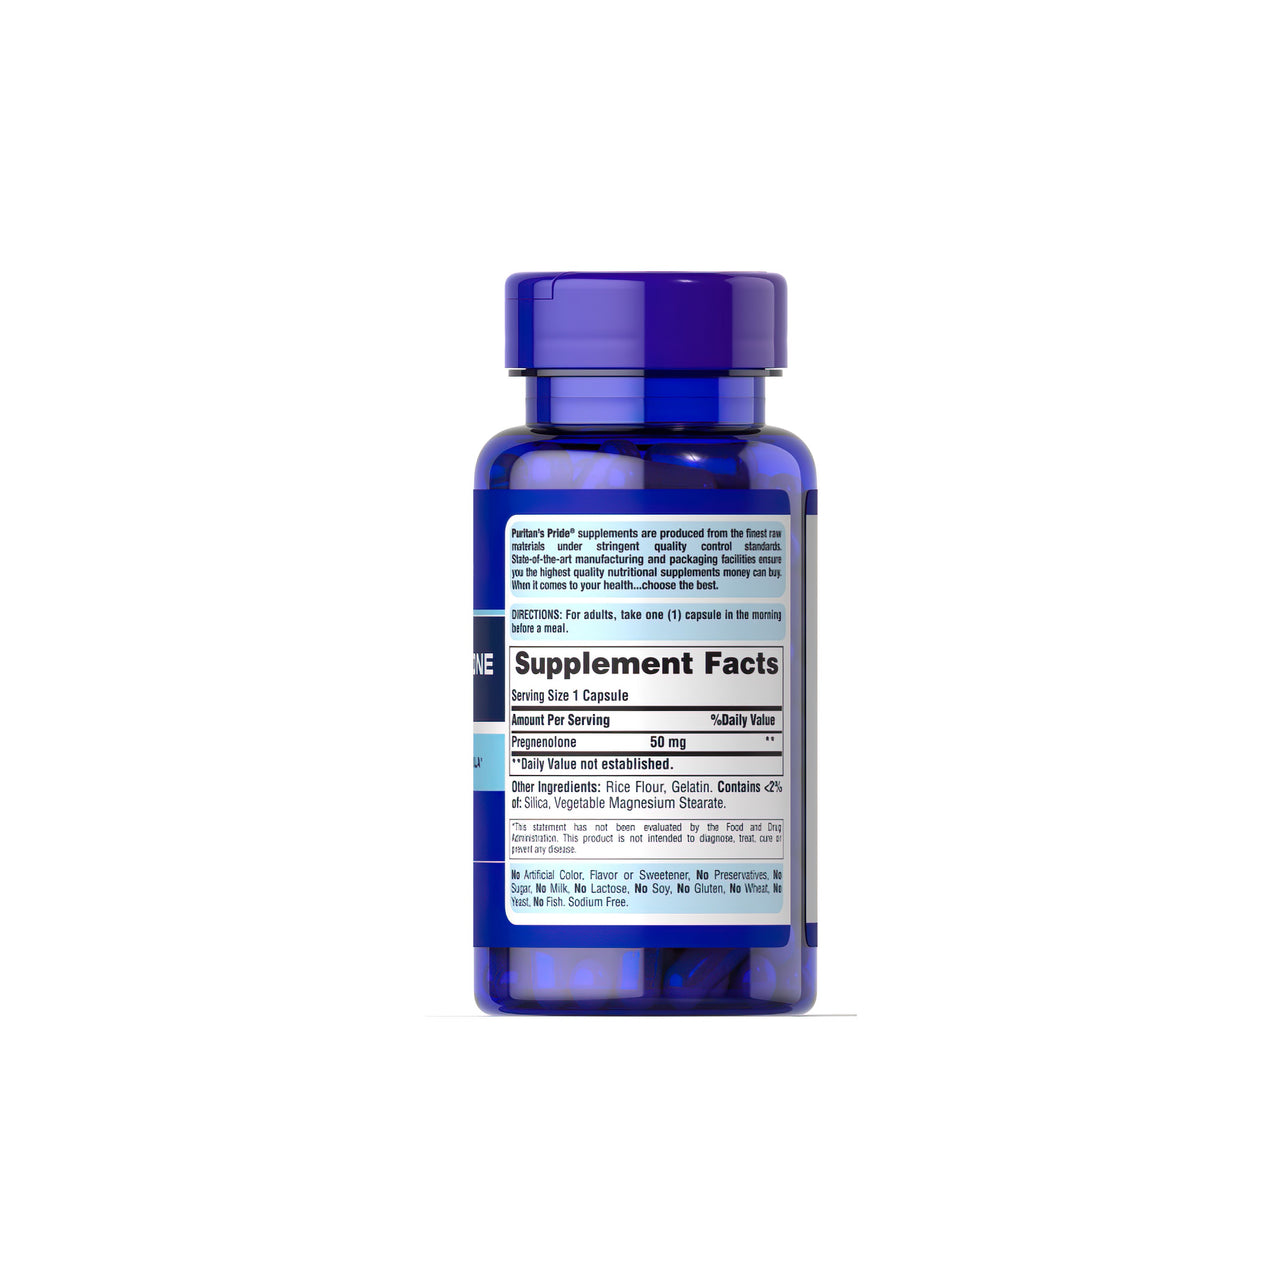 Un flacon de Puritan's Pride Pregnenolone 50 mg 90 Rapid Release Capsules pour un régime de vieillissement sain sur un fond blanc.